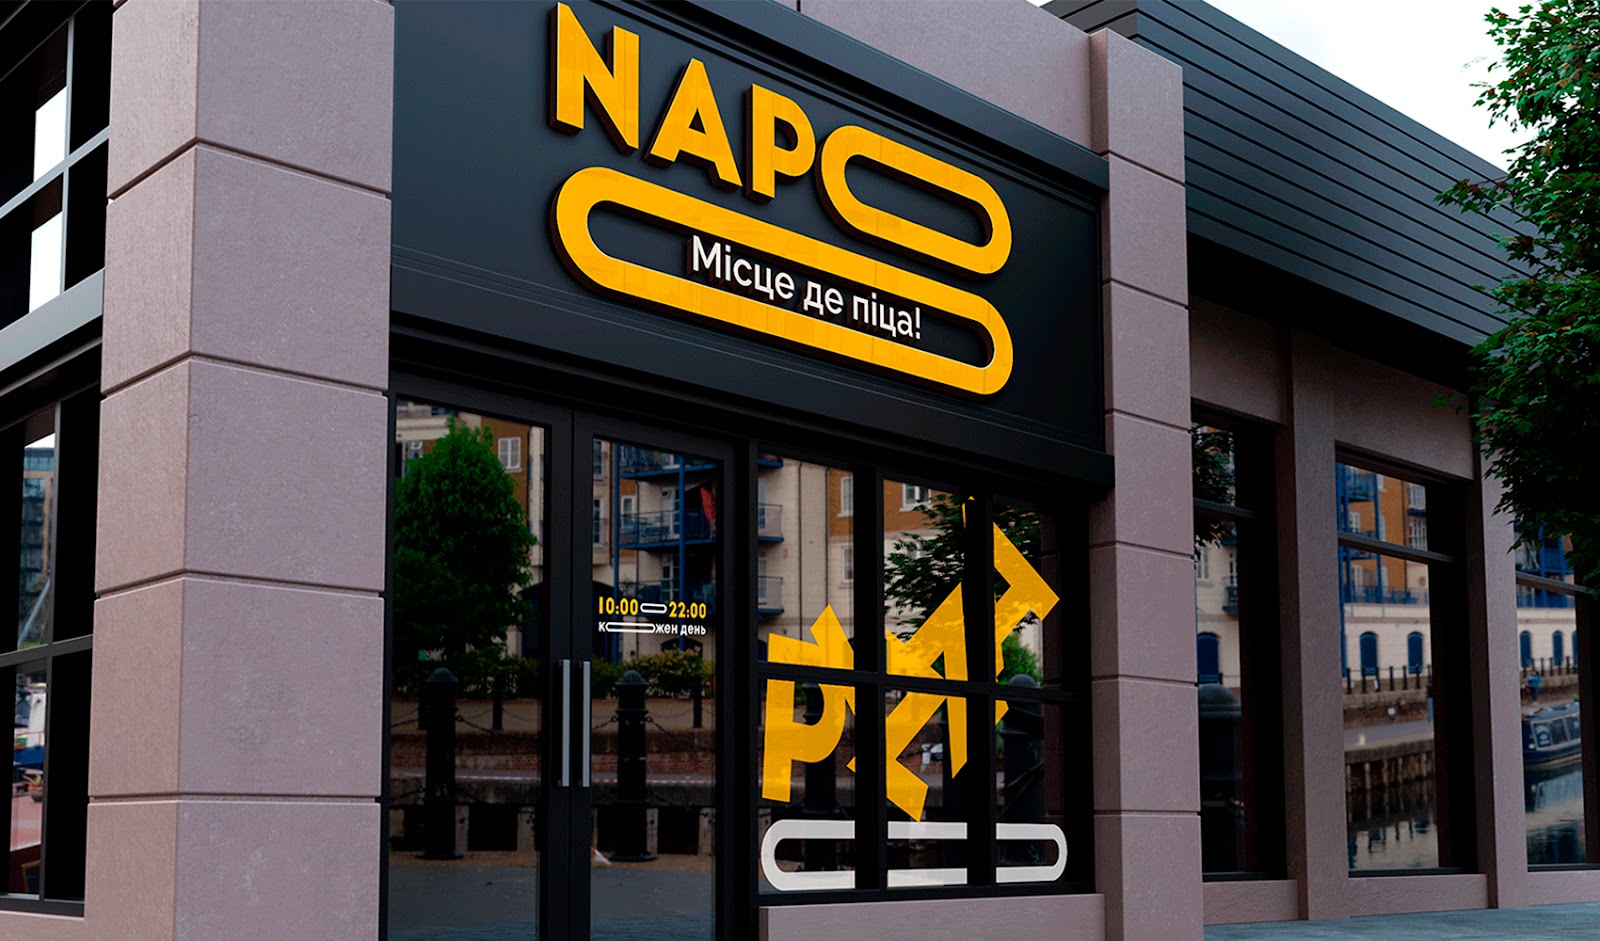 创意食品Napo披萨包装设计作品欣赏。